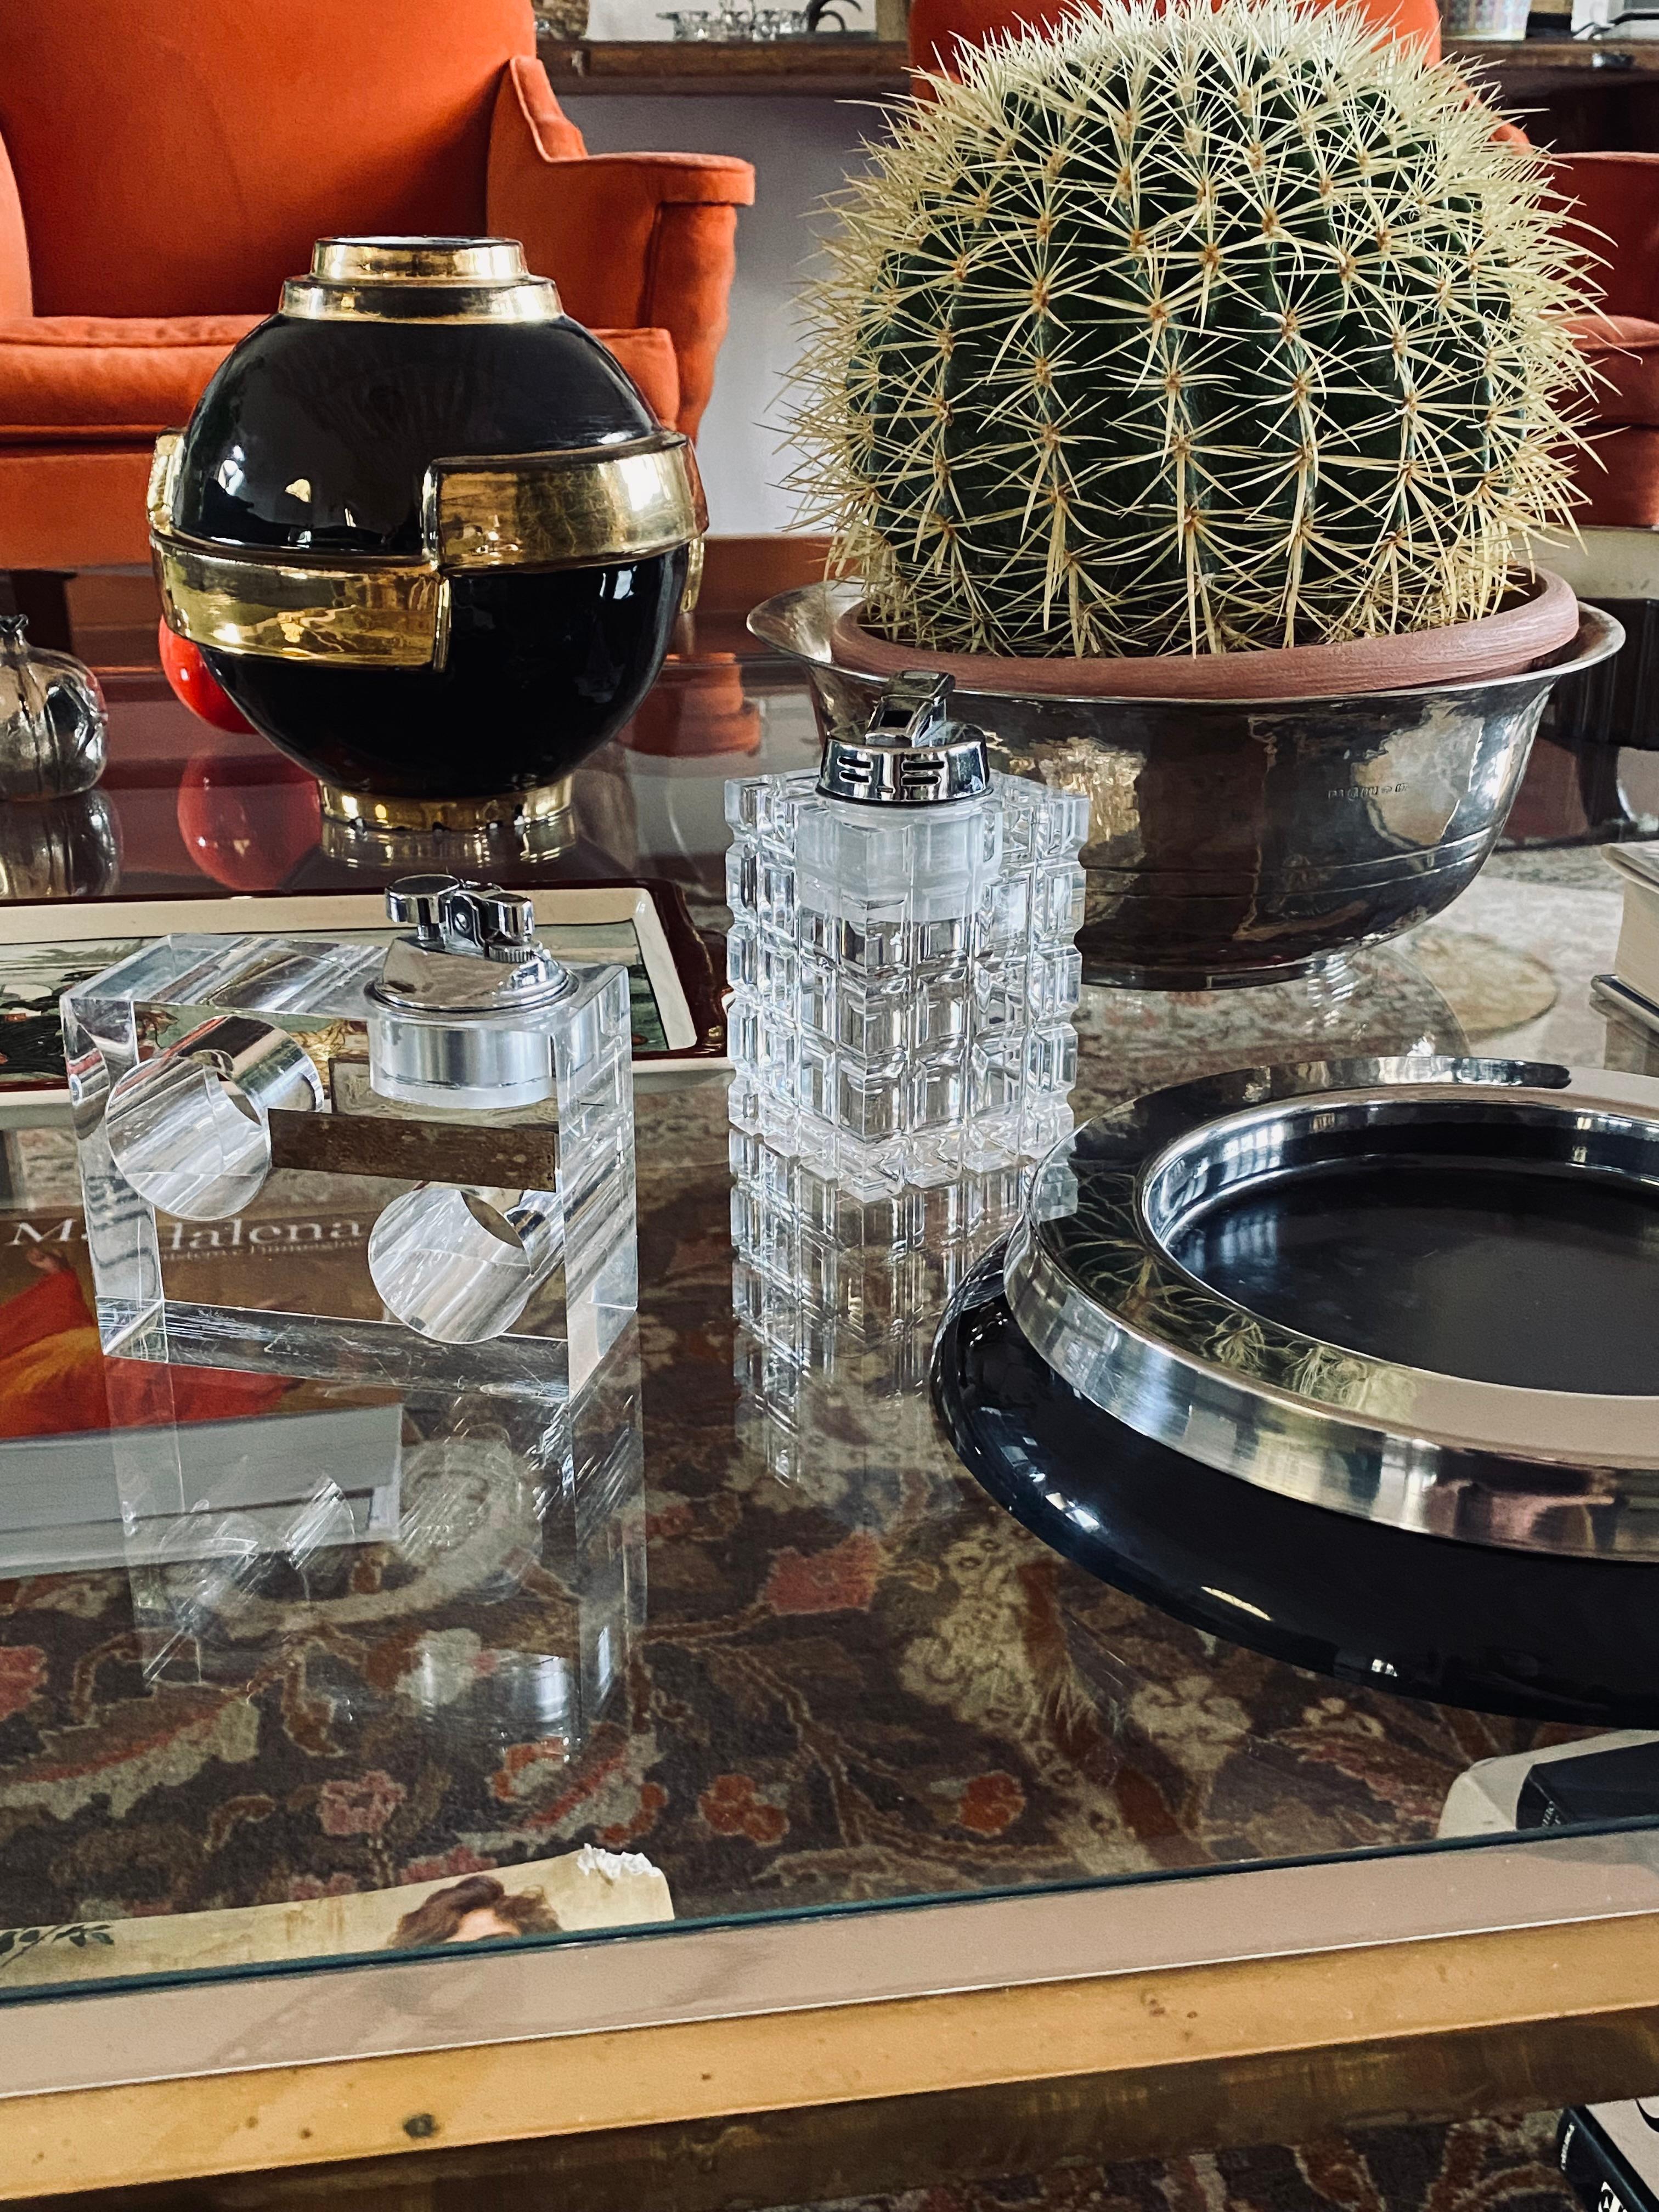 Tischfeuerzeug aus transparentem Lucite.

Italienische Herstellung 1970er Jahre.

Maße: H 13 x 7 x 7 cm

Condit: ausgezeichnet, entsprechend dem Alter und dem Gebrauch. Unter Arbeitsbedingungen.